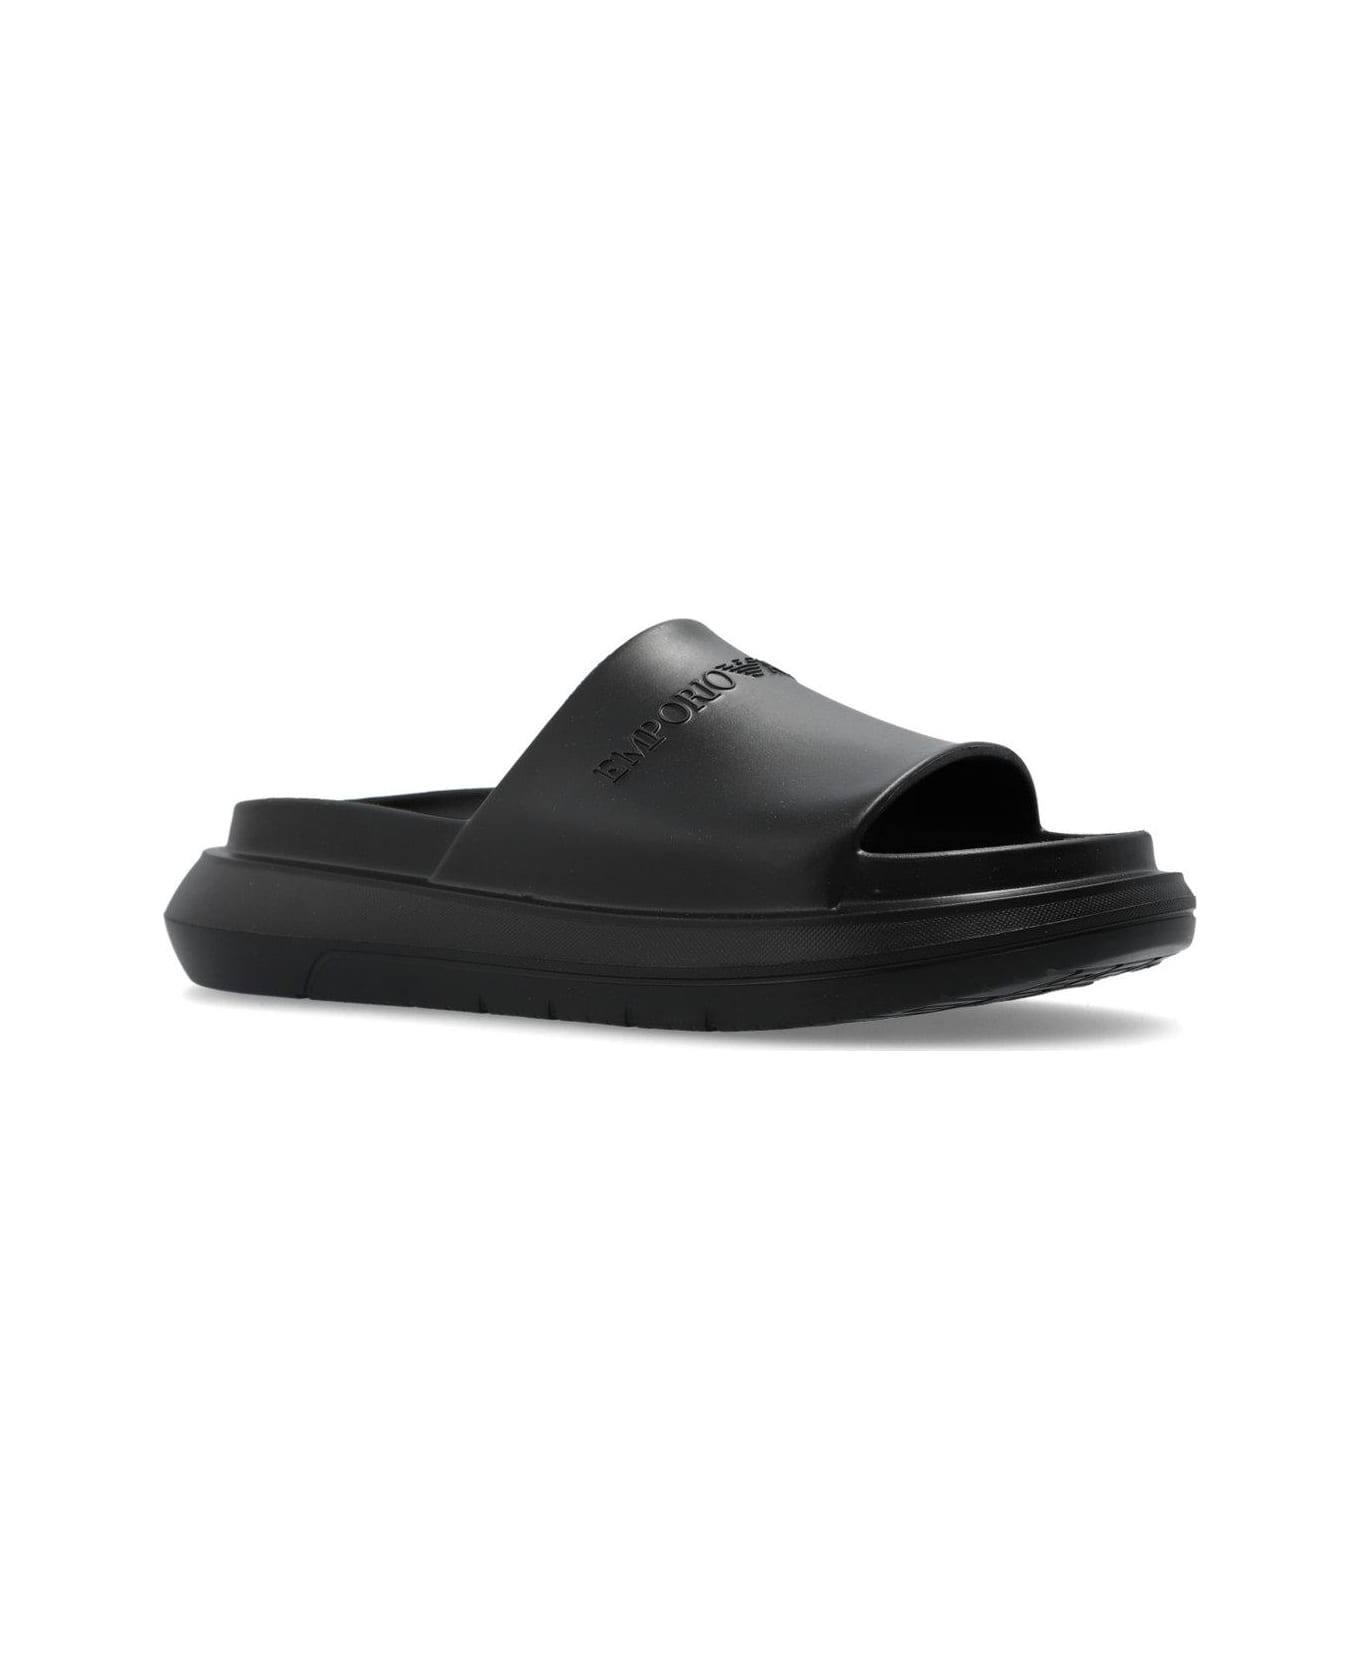 Emporio Armani Rubber Slides - Black